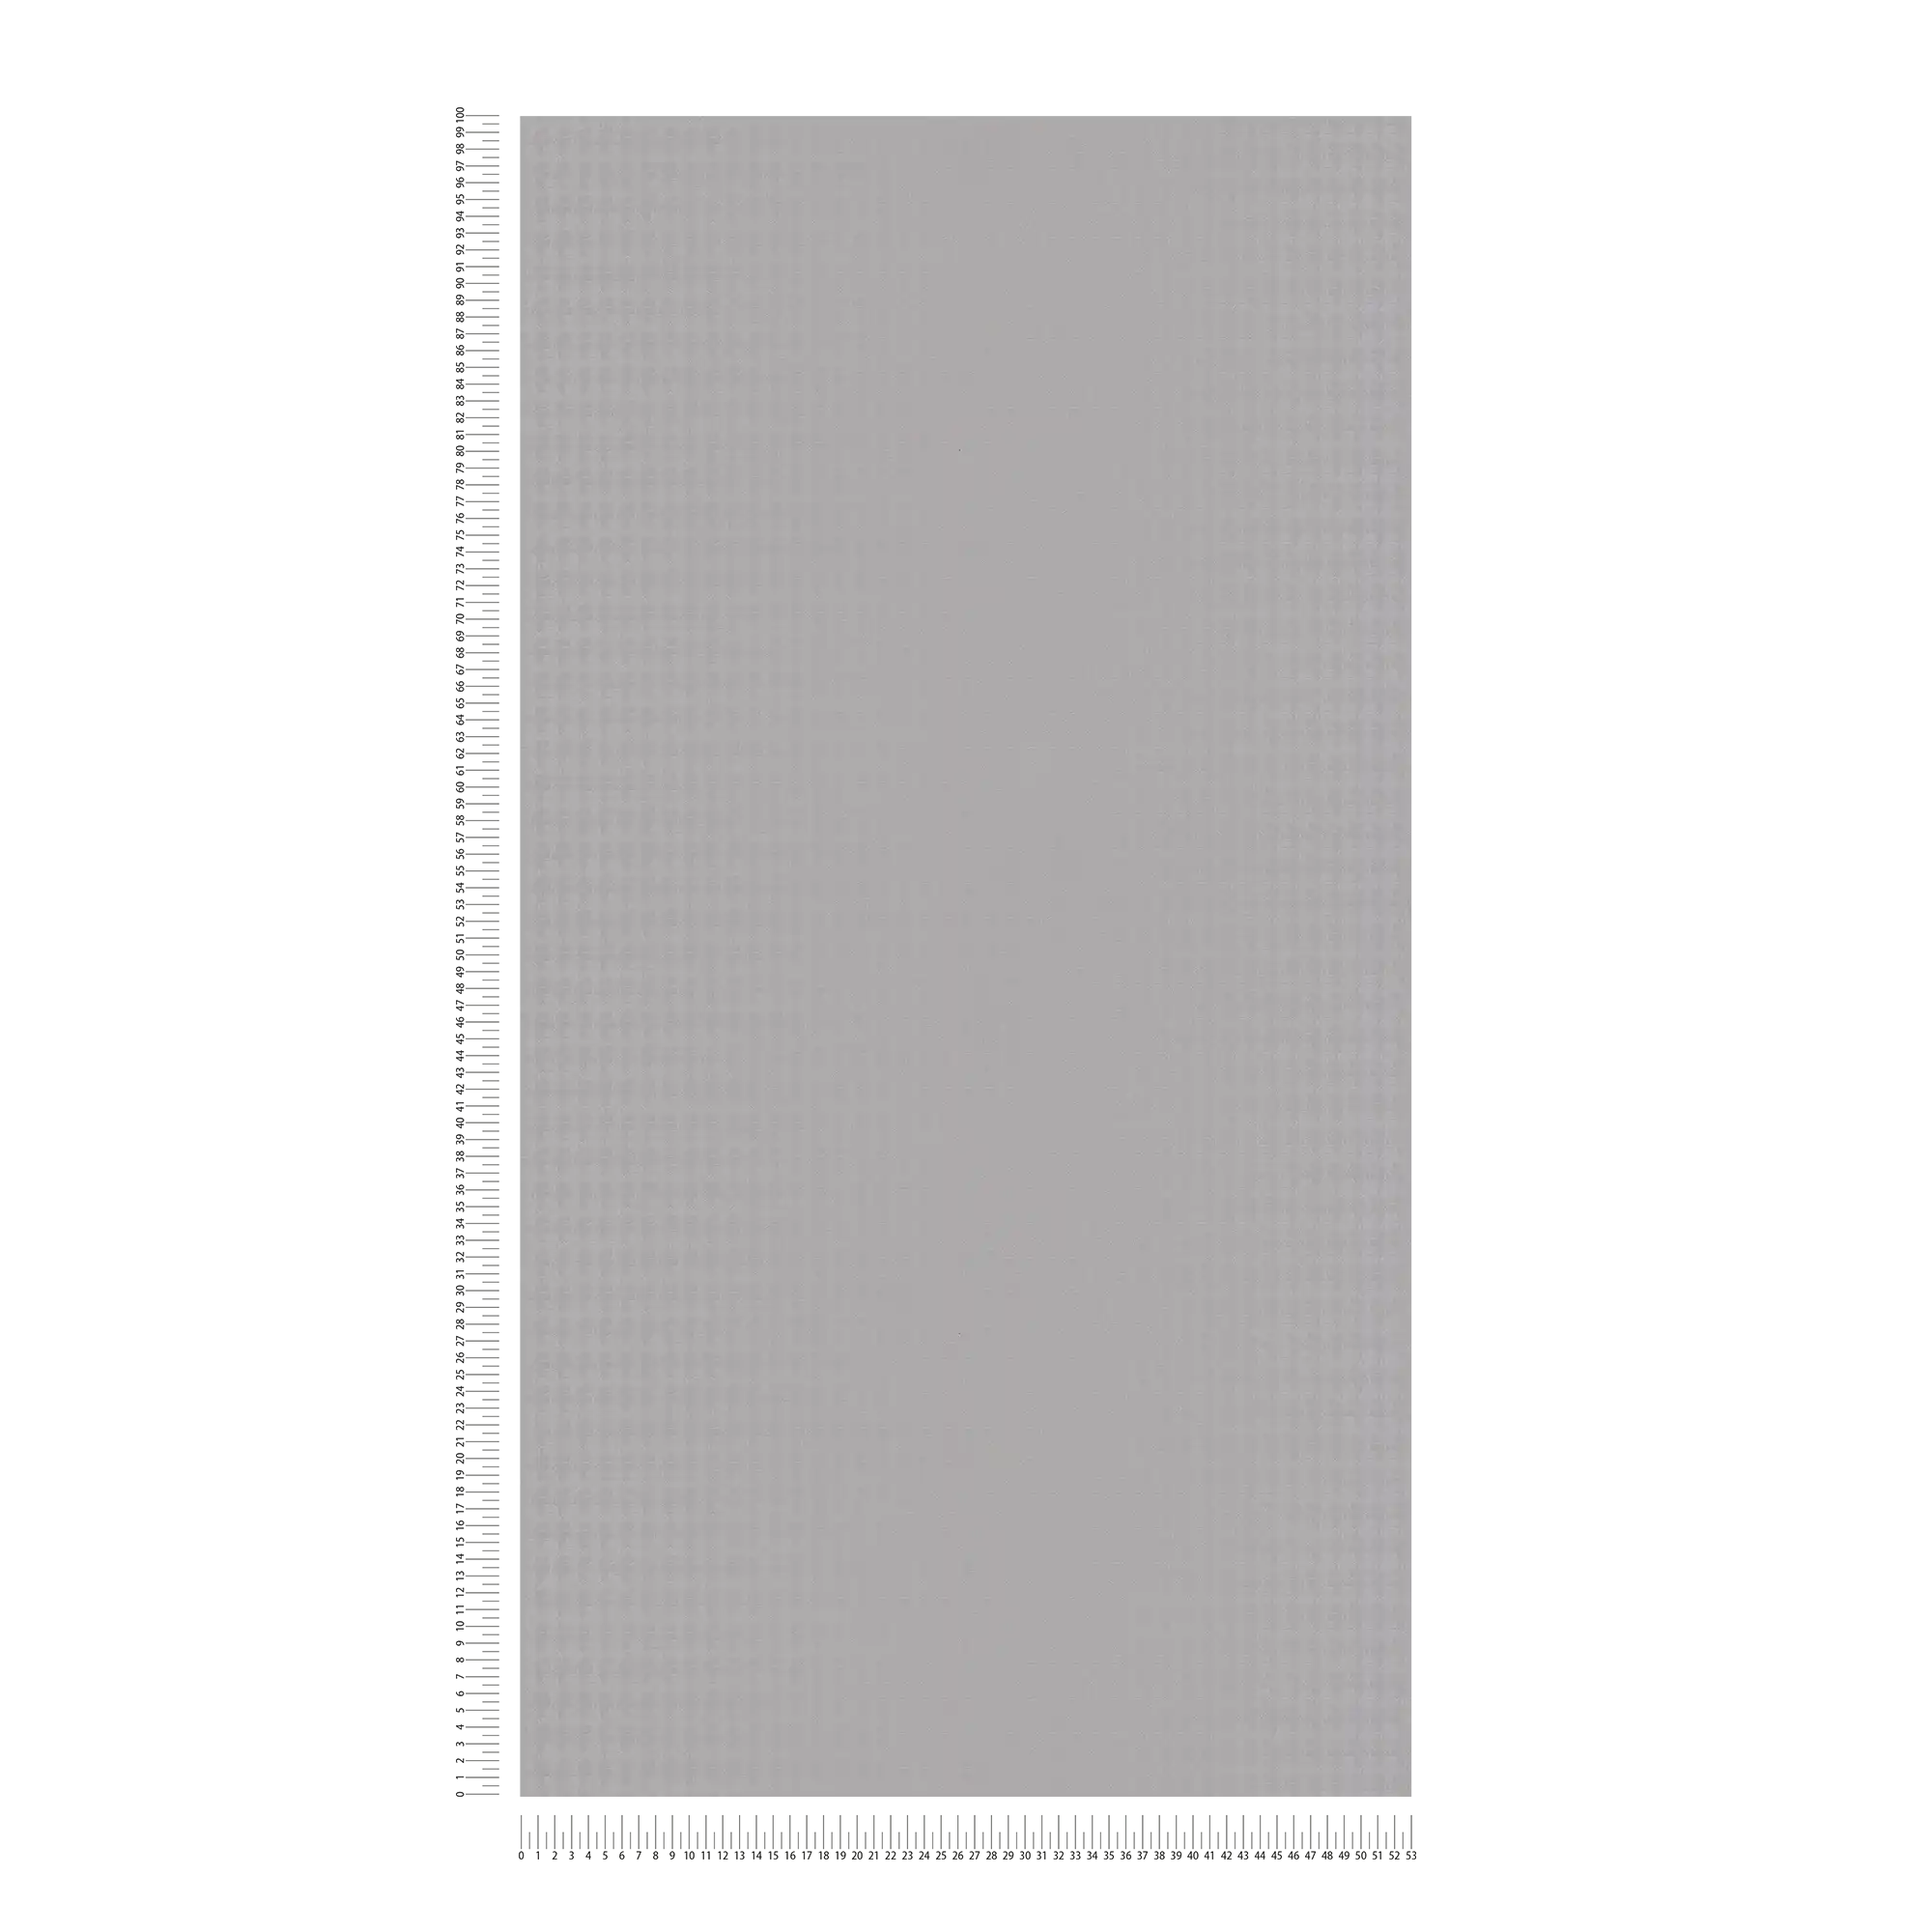             Karl LAGERFELD behang effen met profiel patroon - grijs
        